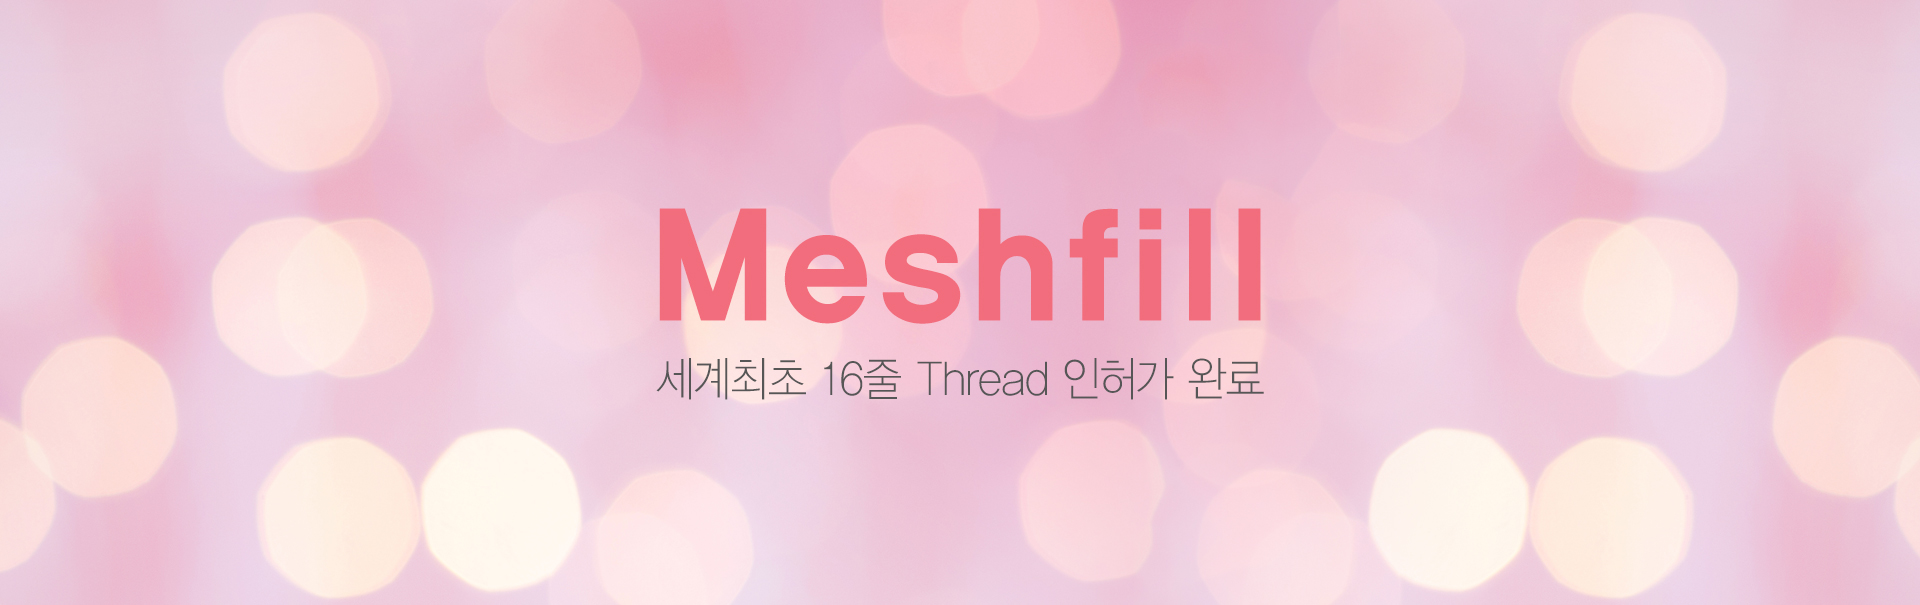 강남 신논현역 피부과 성형외과 라벨라 세계최초 16줄 Thread 인허가 완료 메쉬필 meshfill